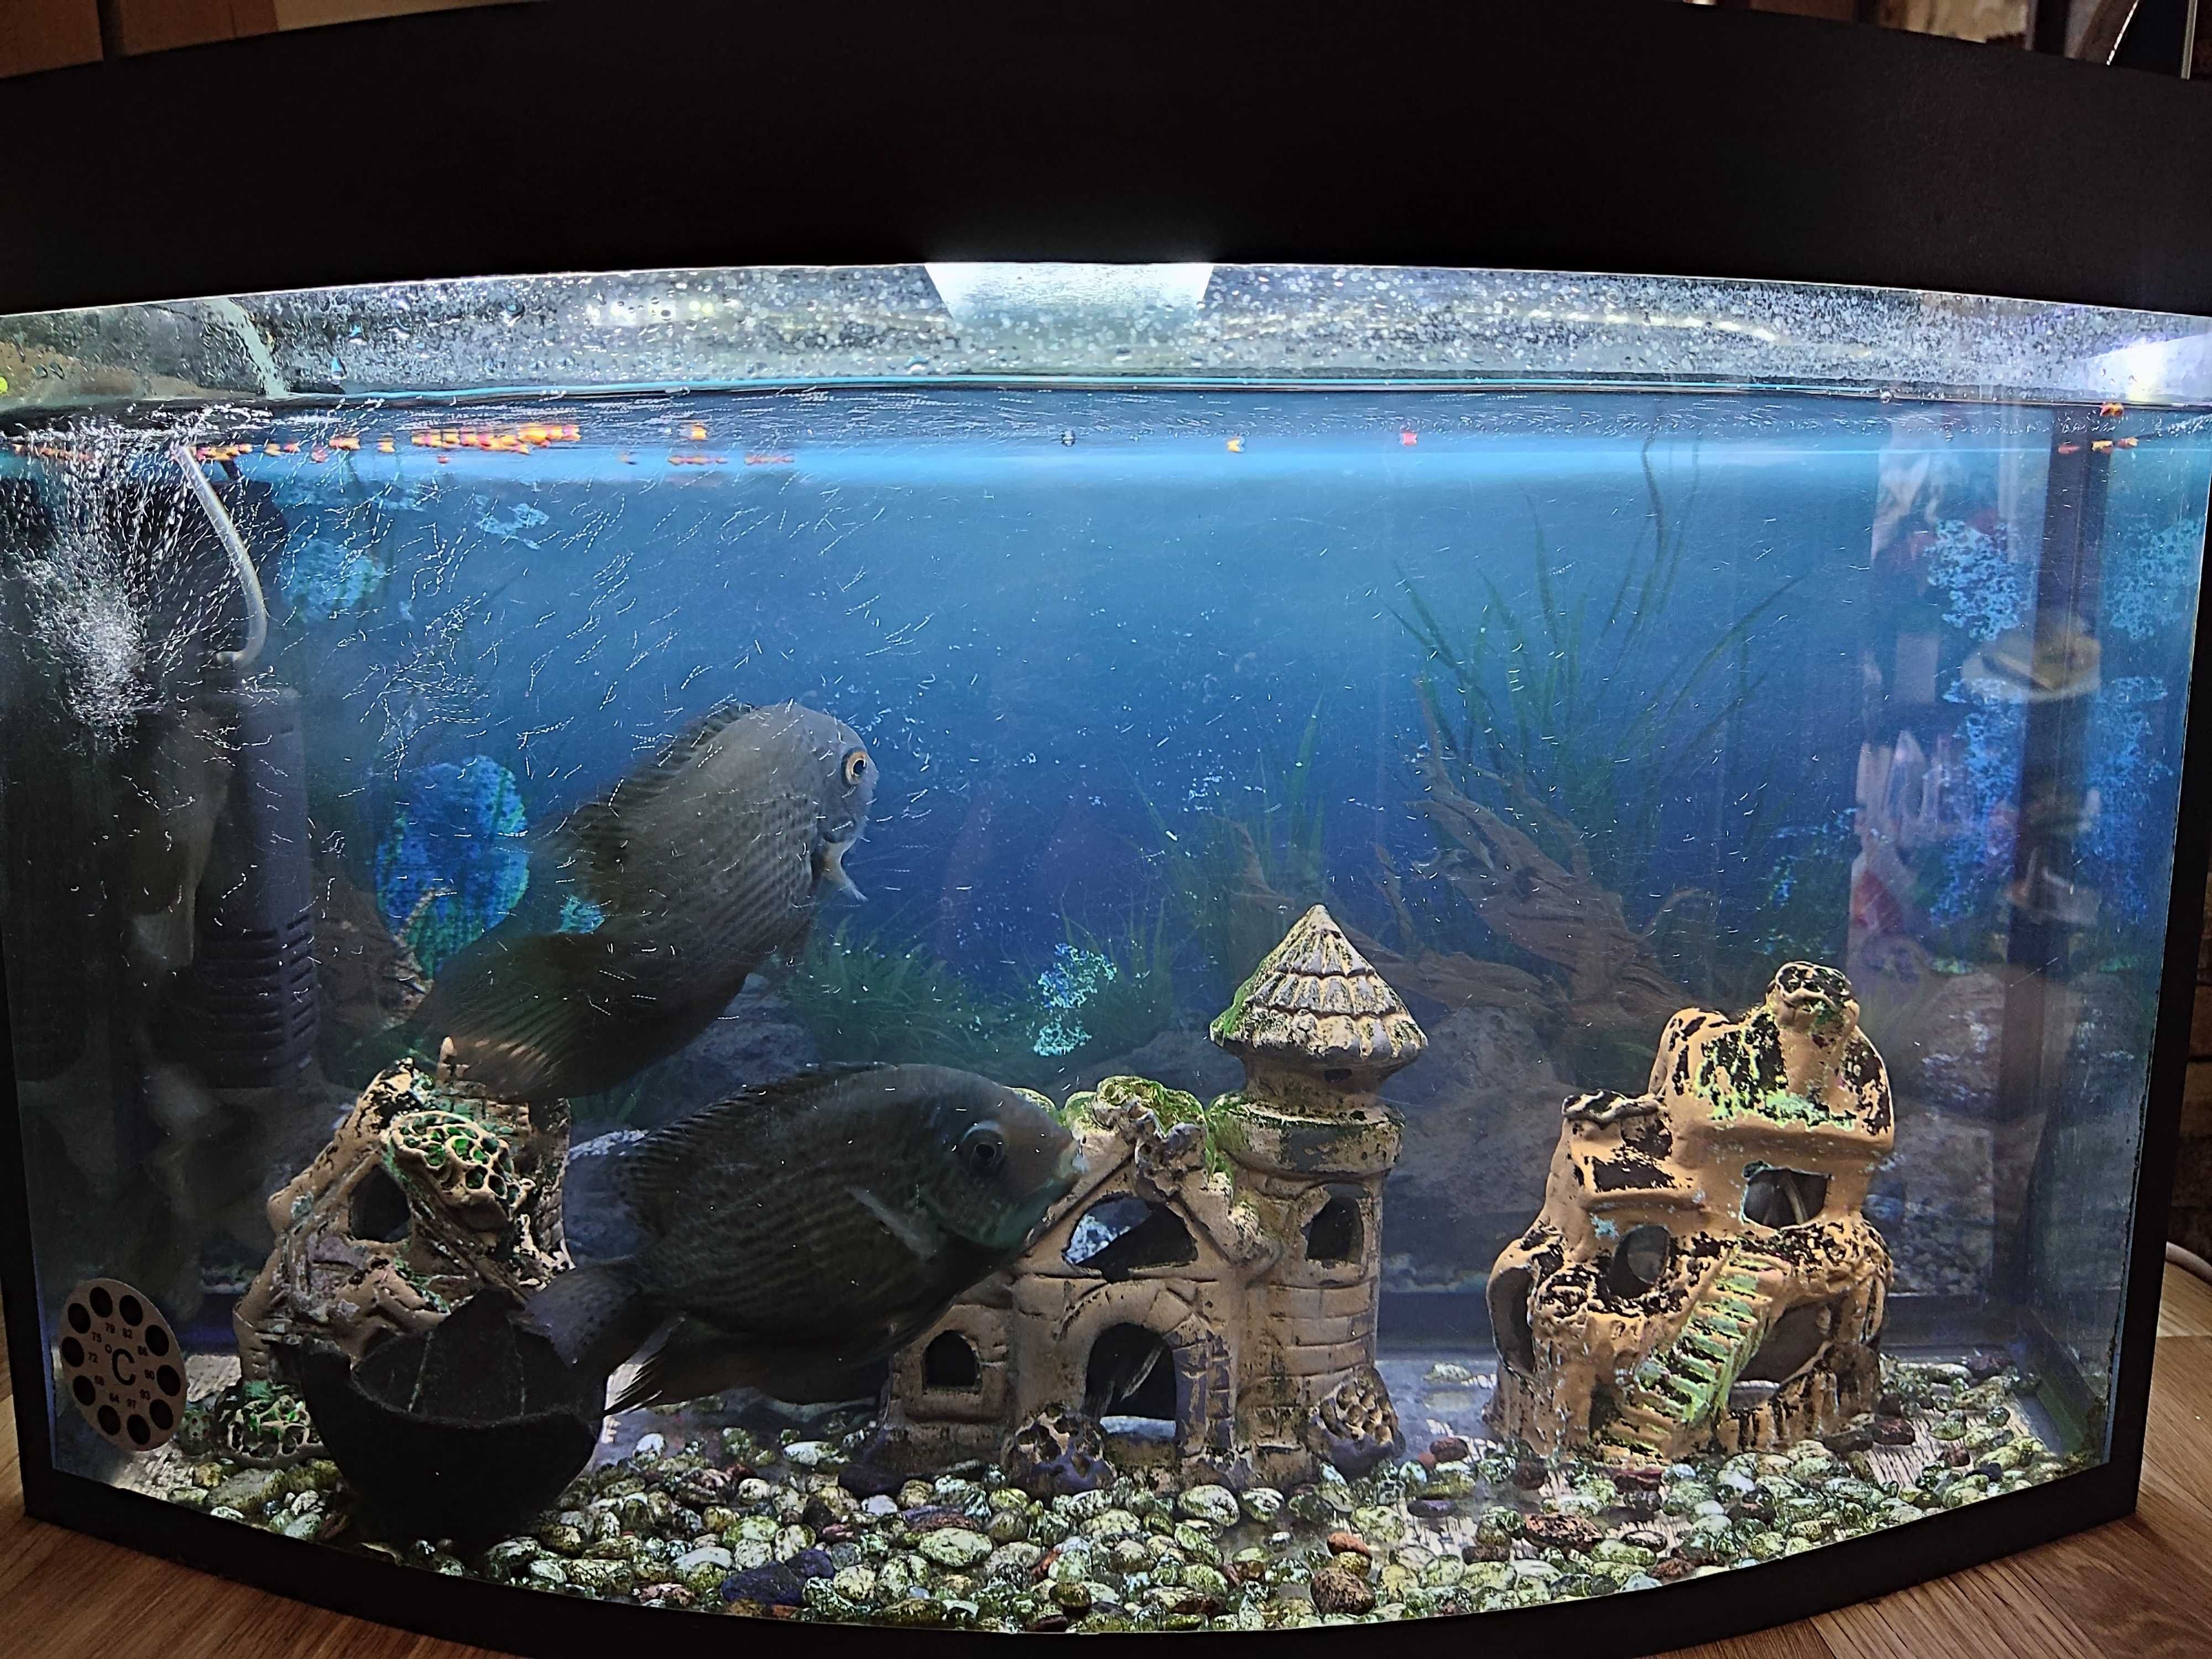 Продам аквариум на 60 литров стекло 6мм с рыбками. Состояние отличное.